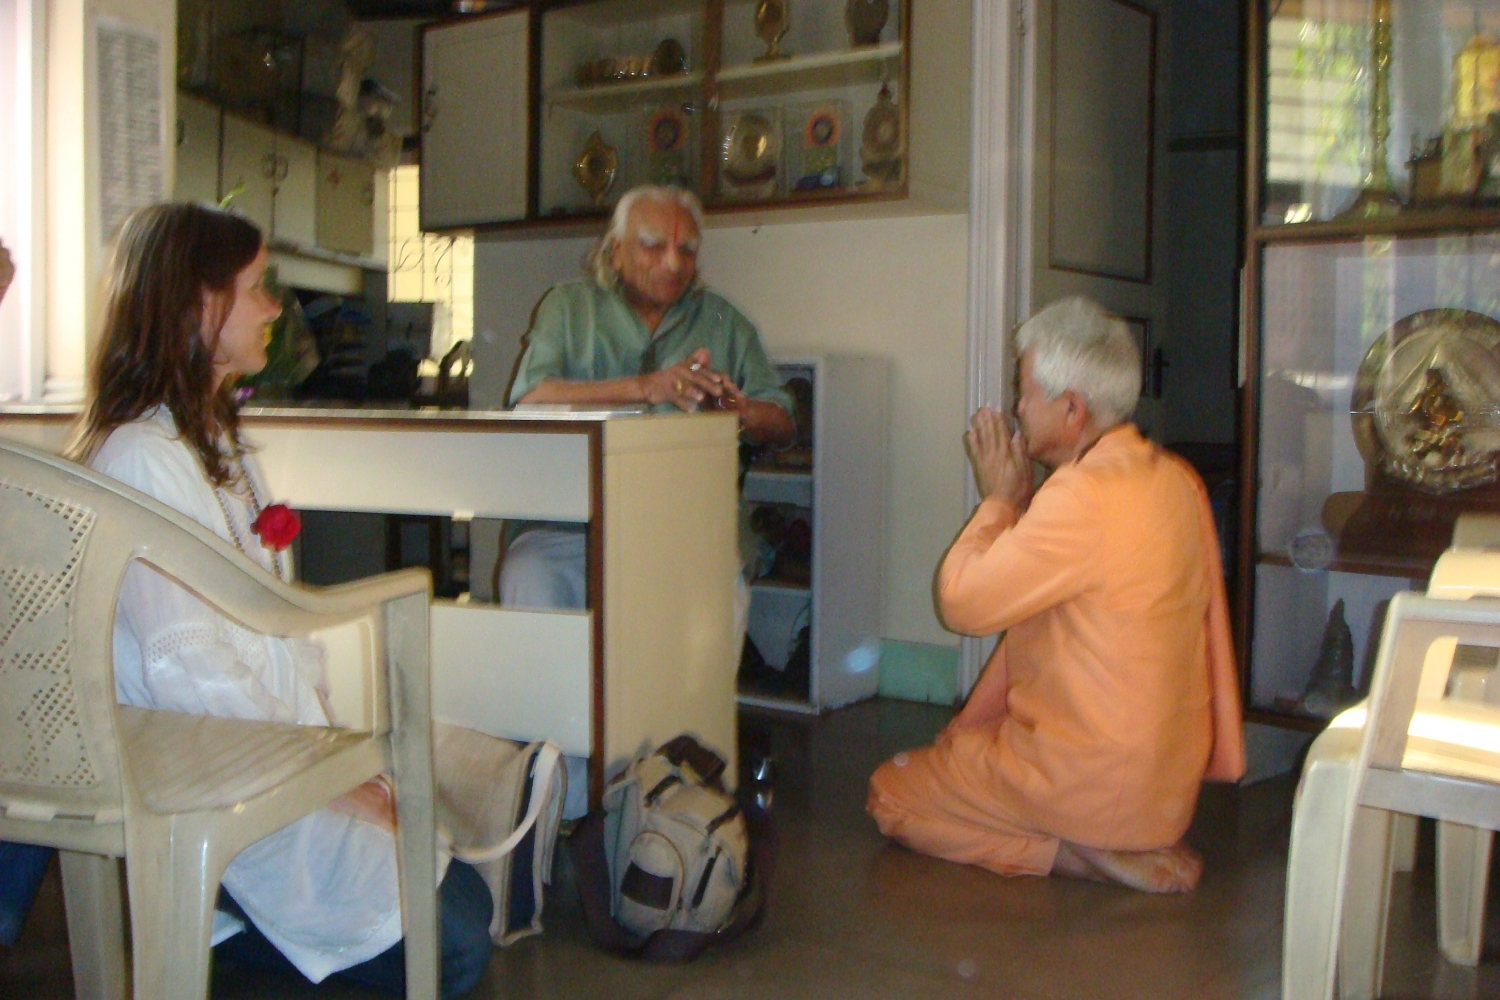 Encontro de H.H. Jagat Guru Amrta Súryánanda Mahá Rája com H.H. B.K.S. Iyengar Jí Mahá Rája  - Pune, Índia - 2009, Dezembro